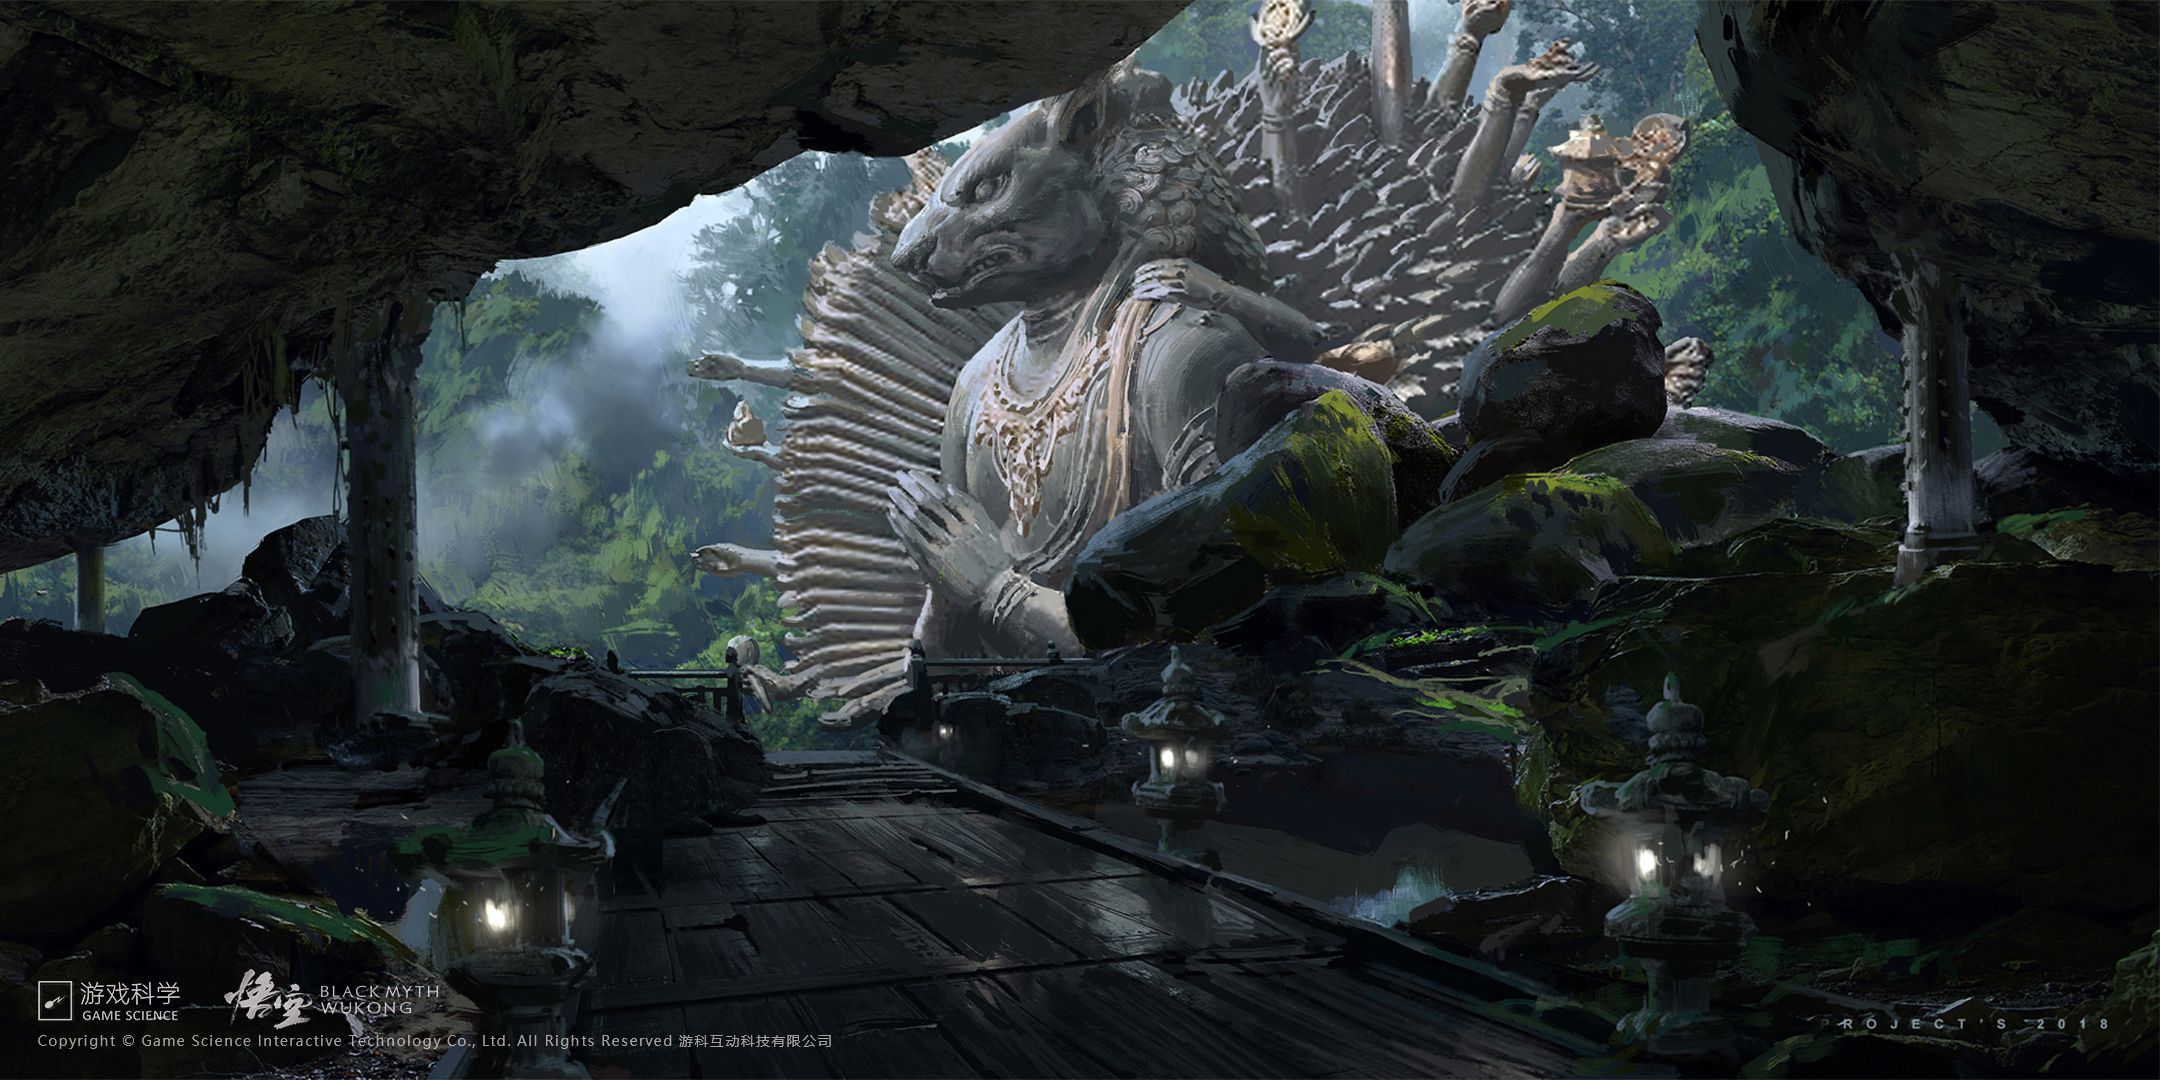 Black Myth: Wukong Official Screenshots, Wallpaper and Artwork